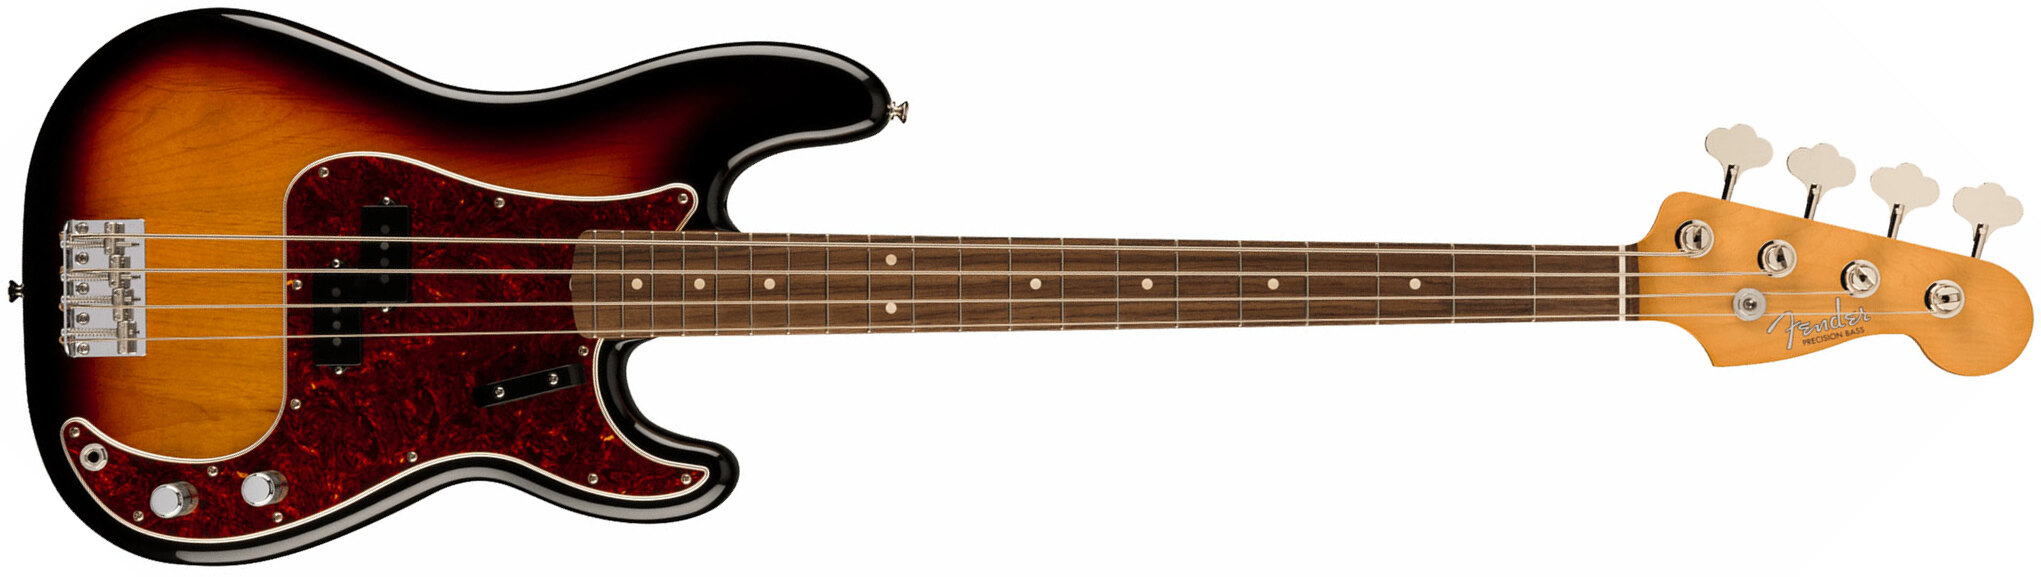 Fender Precision Bass 60s Vintera Ii Mex Rw - 3-color Sunburst - Bajo eléctrico de cuerpo sólido - Main picture